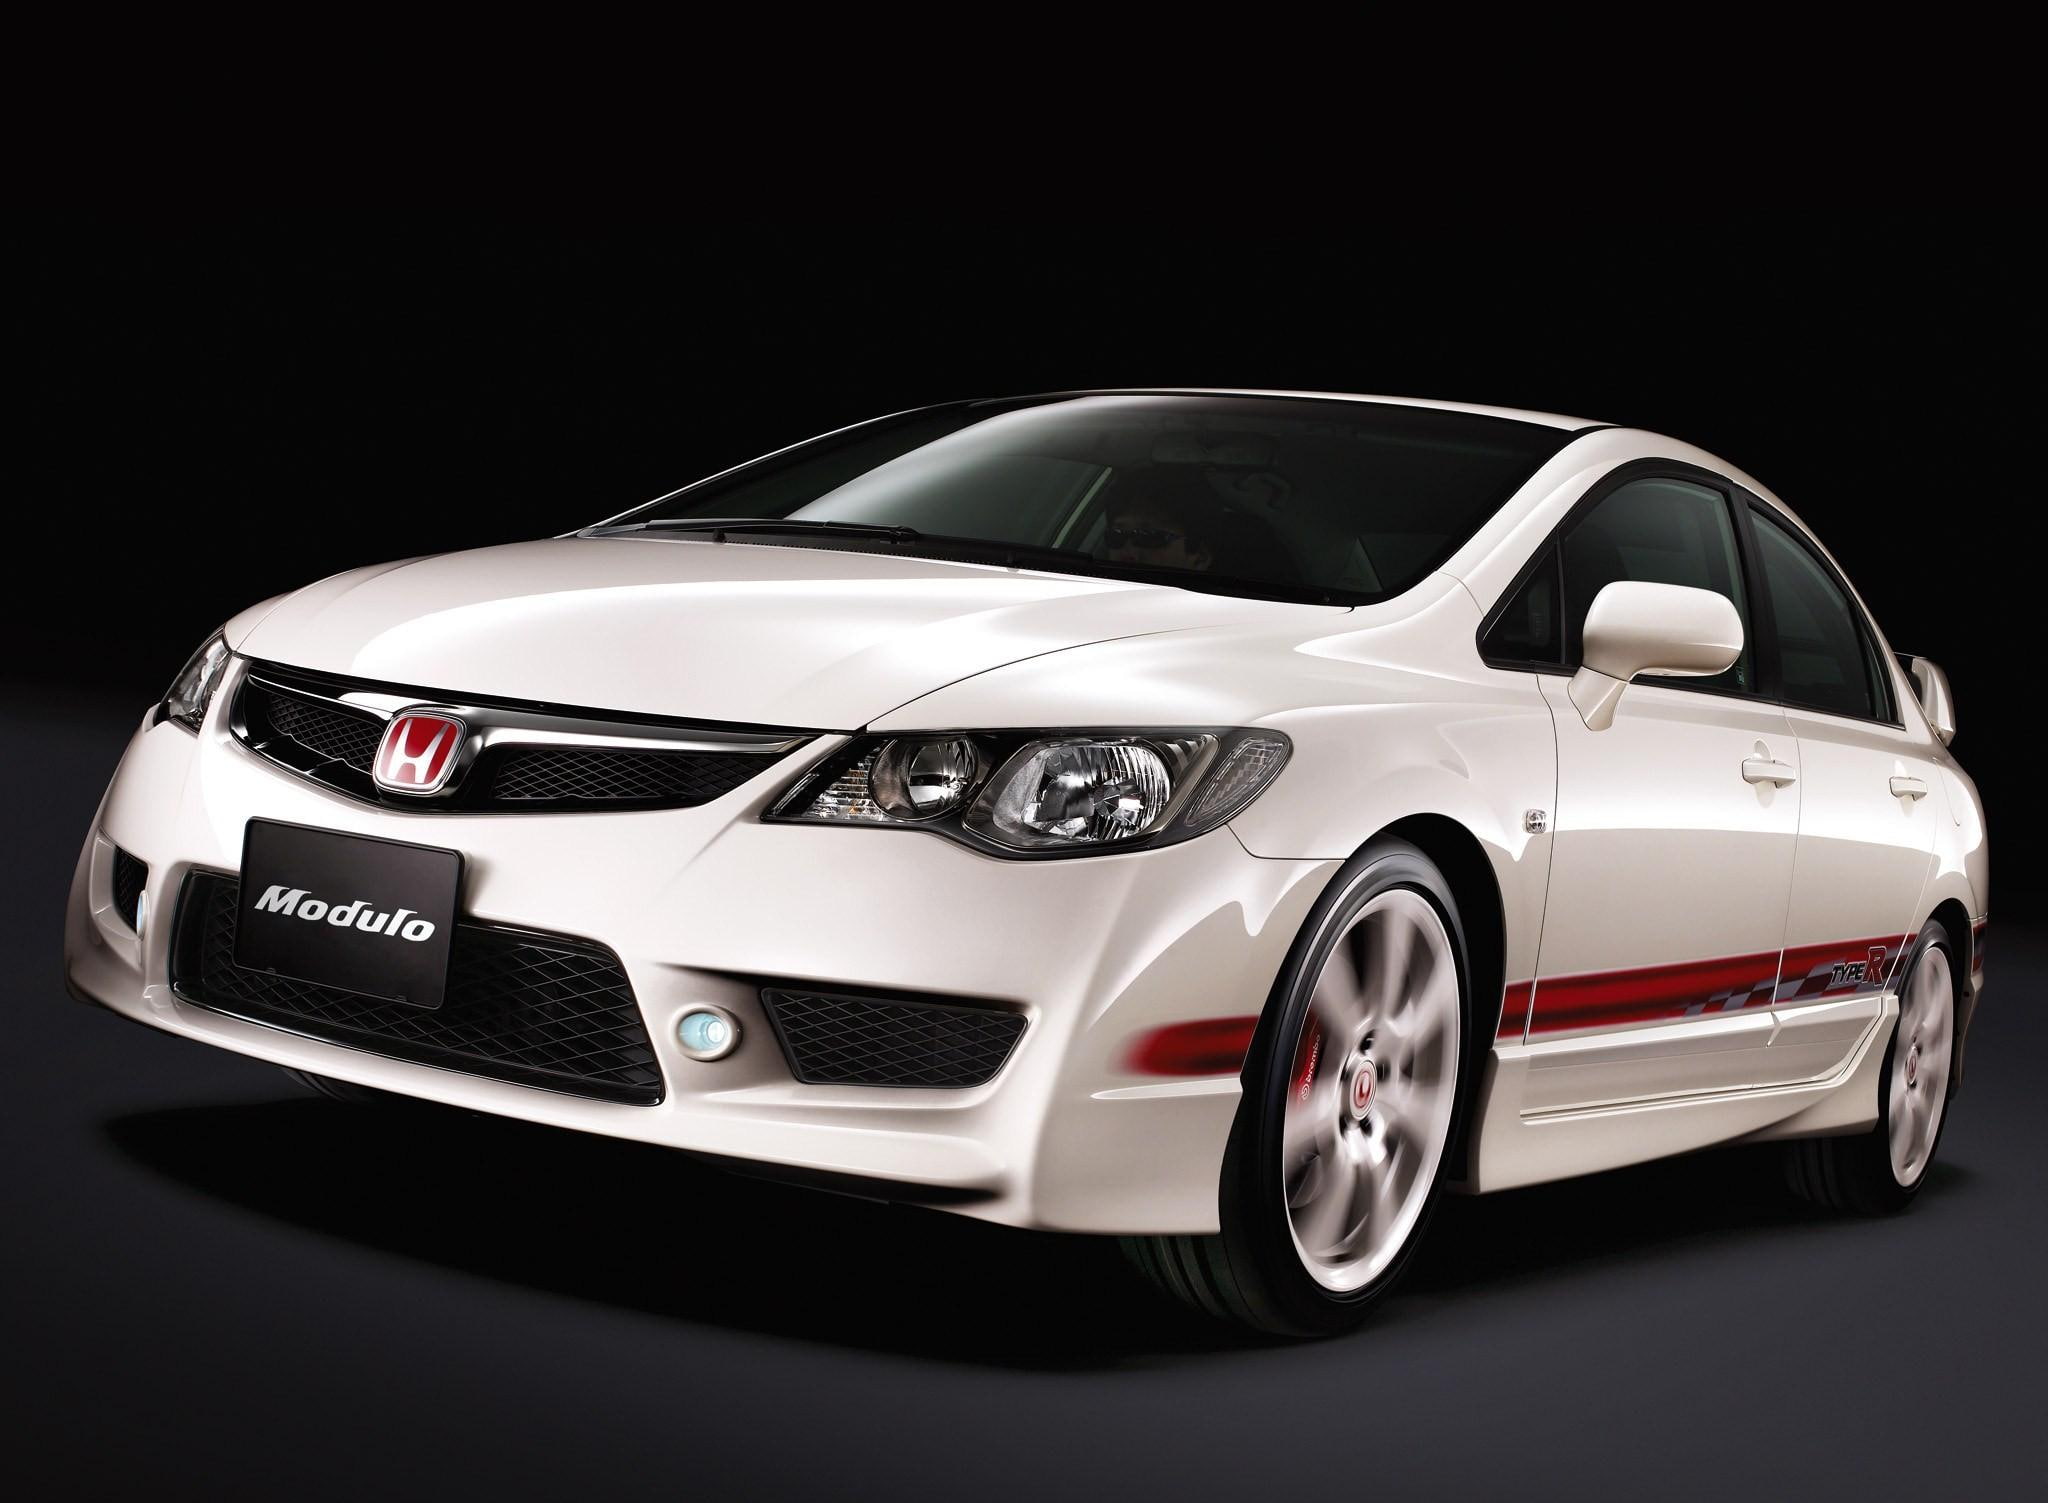 Honda fd. Honda Civic 4d Type r 2008. Honda Civic 8 4d Type r. Хонда Цивик тайп р 4д седан. Хонда Цивик Type r 2008 седан.